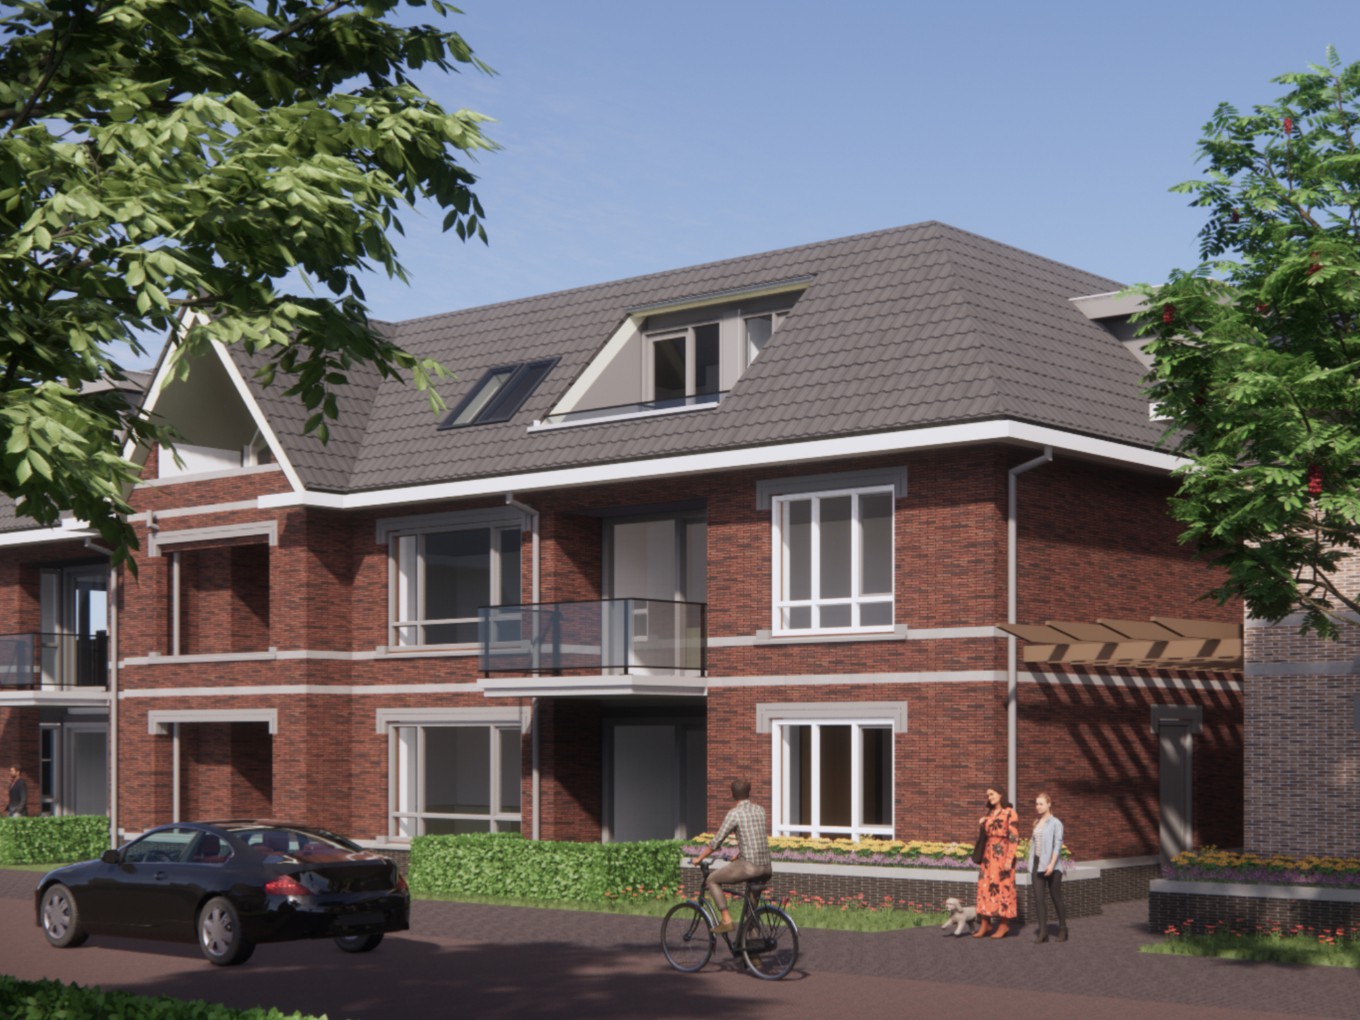 Raadscommissie behandelt bouwplan Nieuwleusen-Noord voor tweede keer